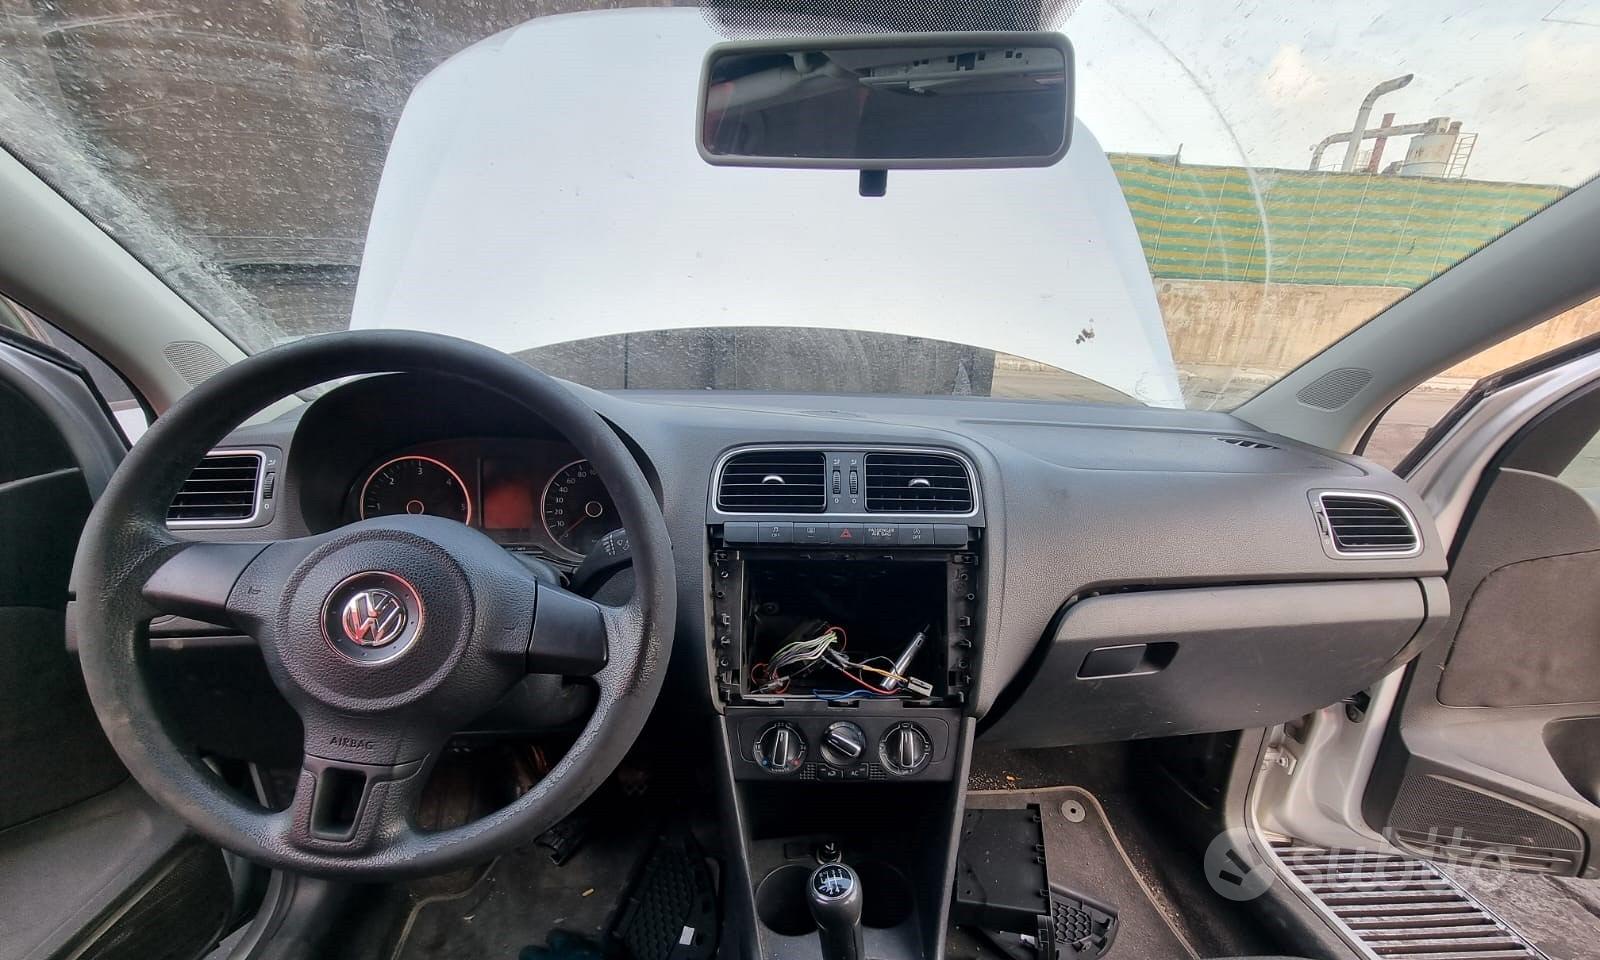 Subito - Lastrina Autodemolizioni - Autoradio navigatore Citroen C3 2018 -  Accessori Auto In vendita a Siracusa